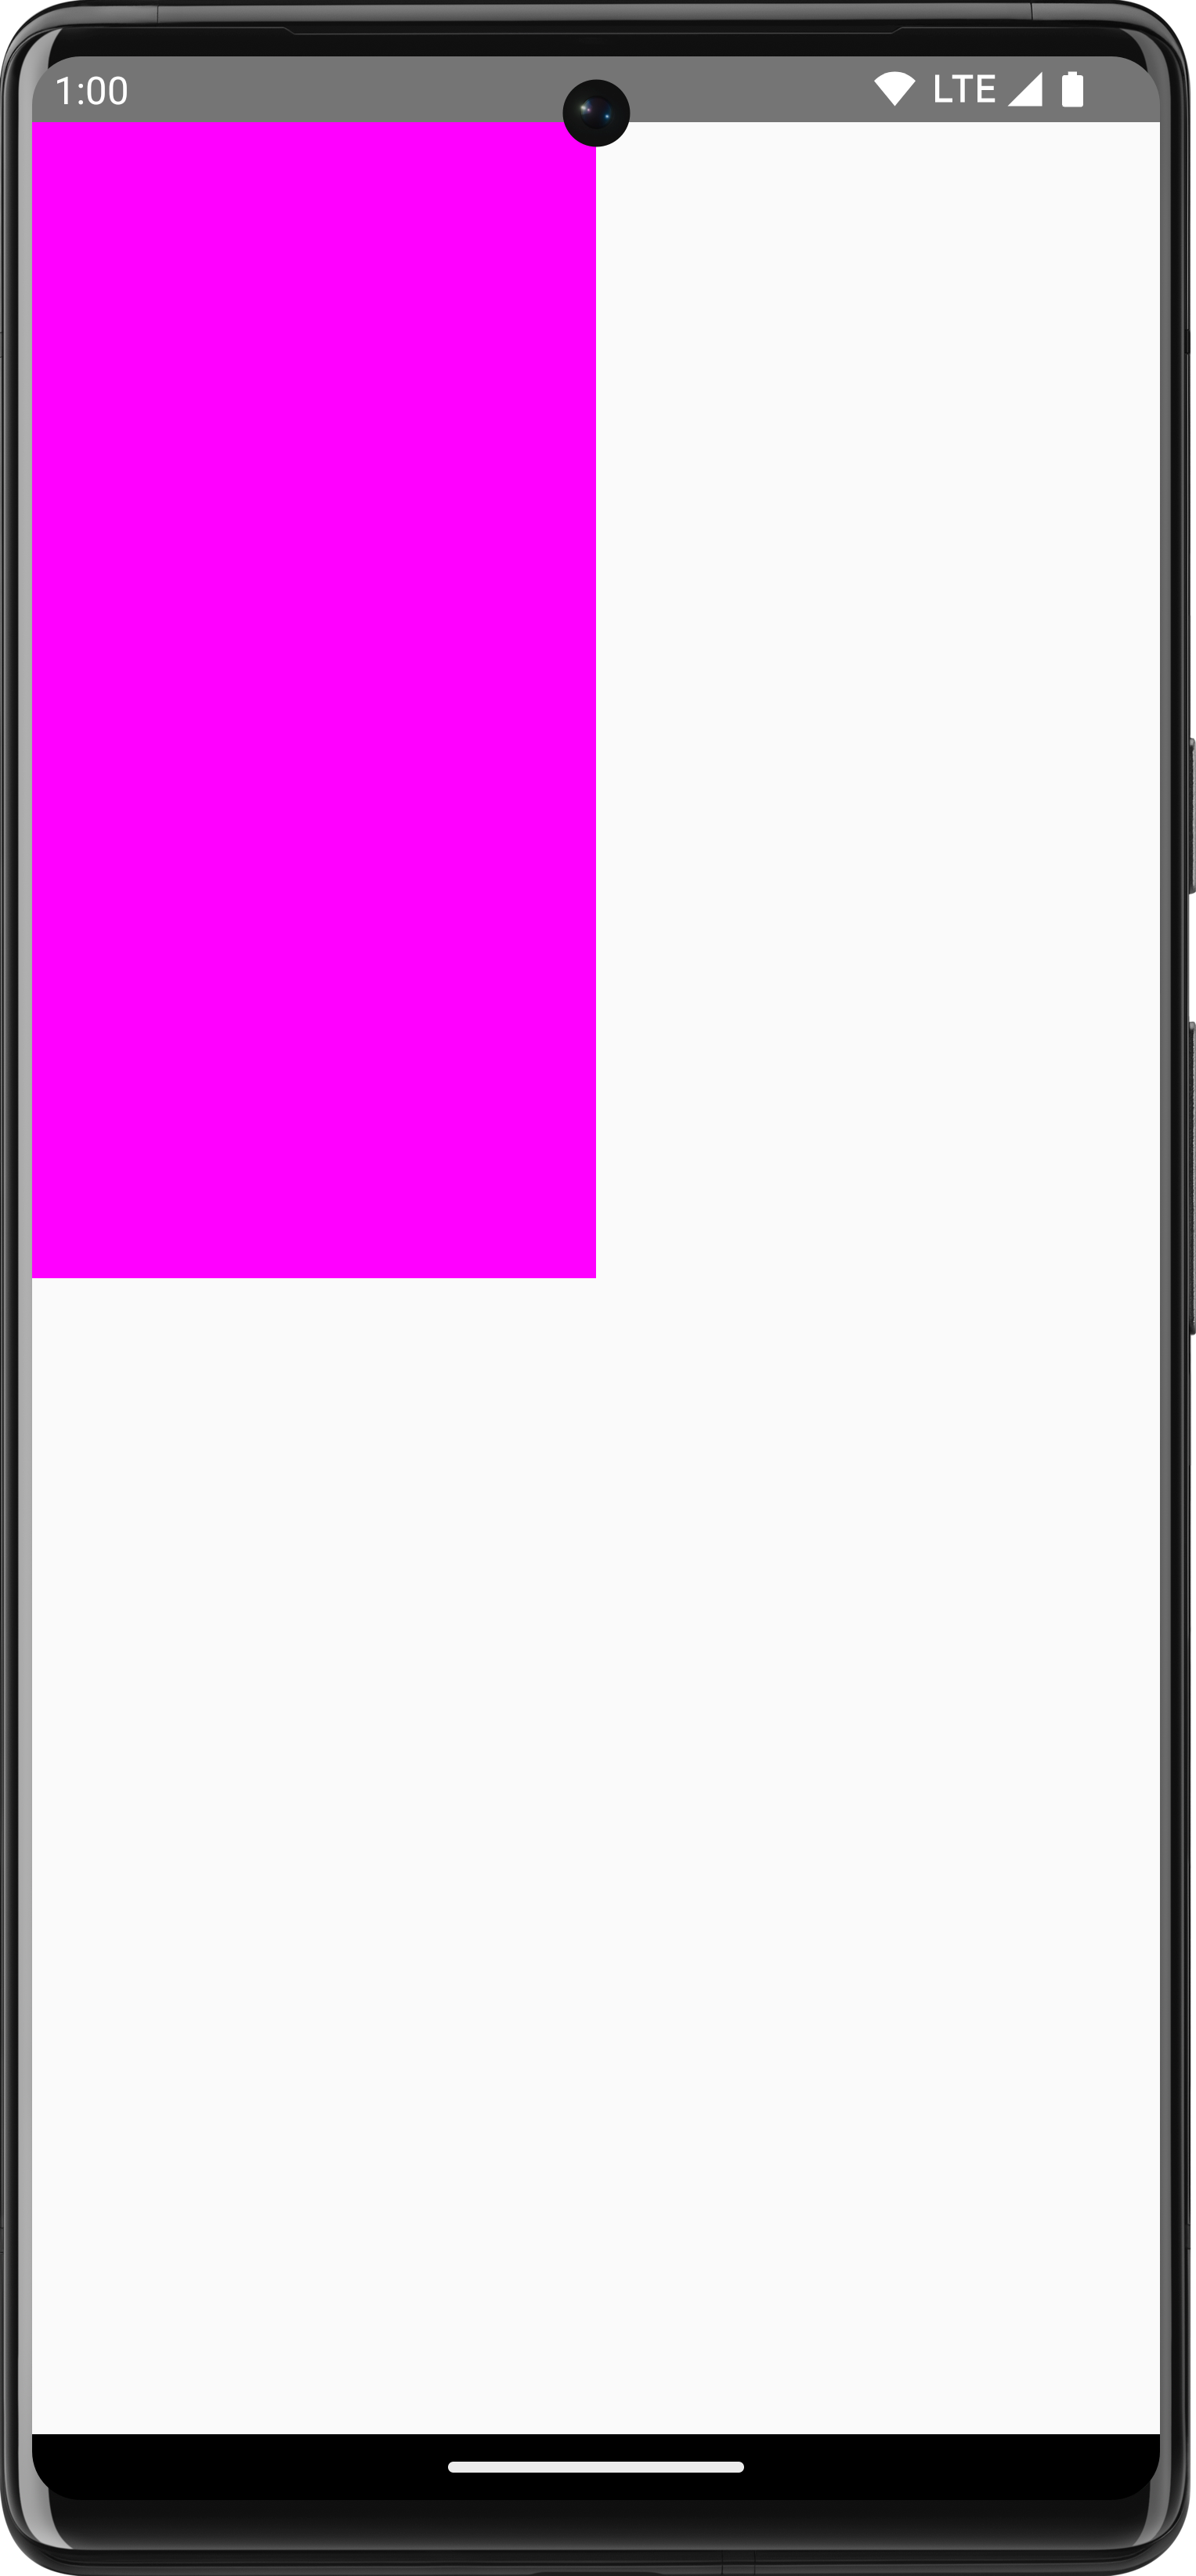 مستطيل وردي مرسوم على خلفية بيضاء تشغل ربع الشاشة